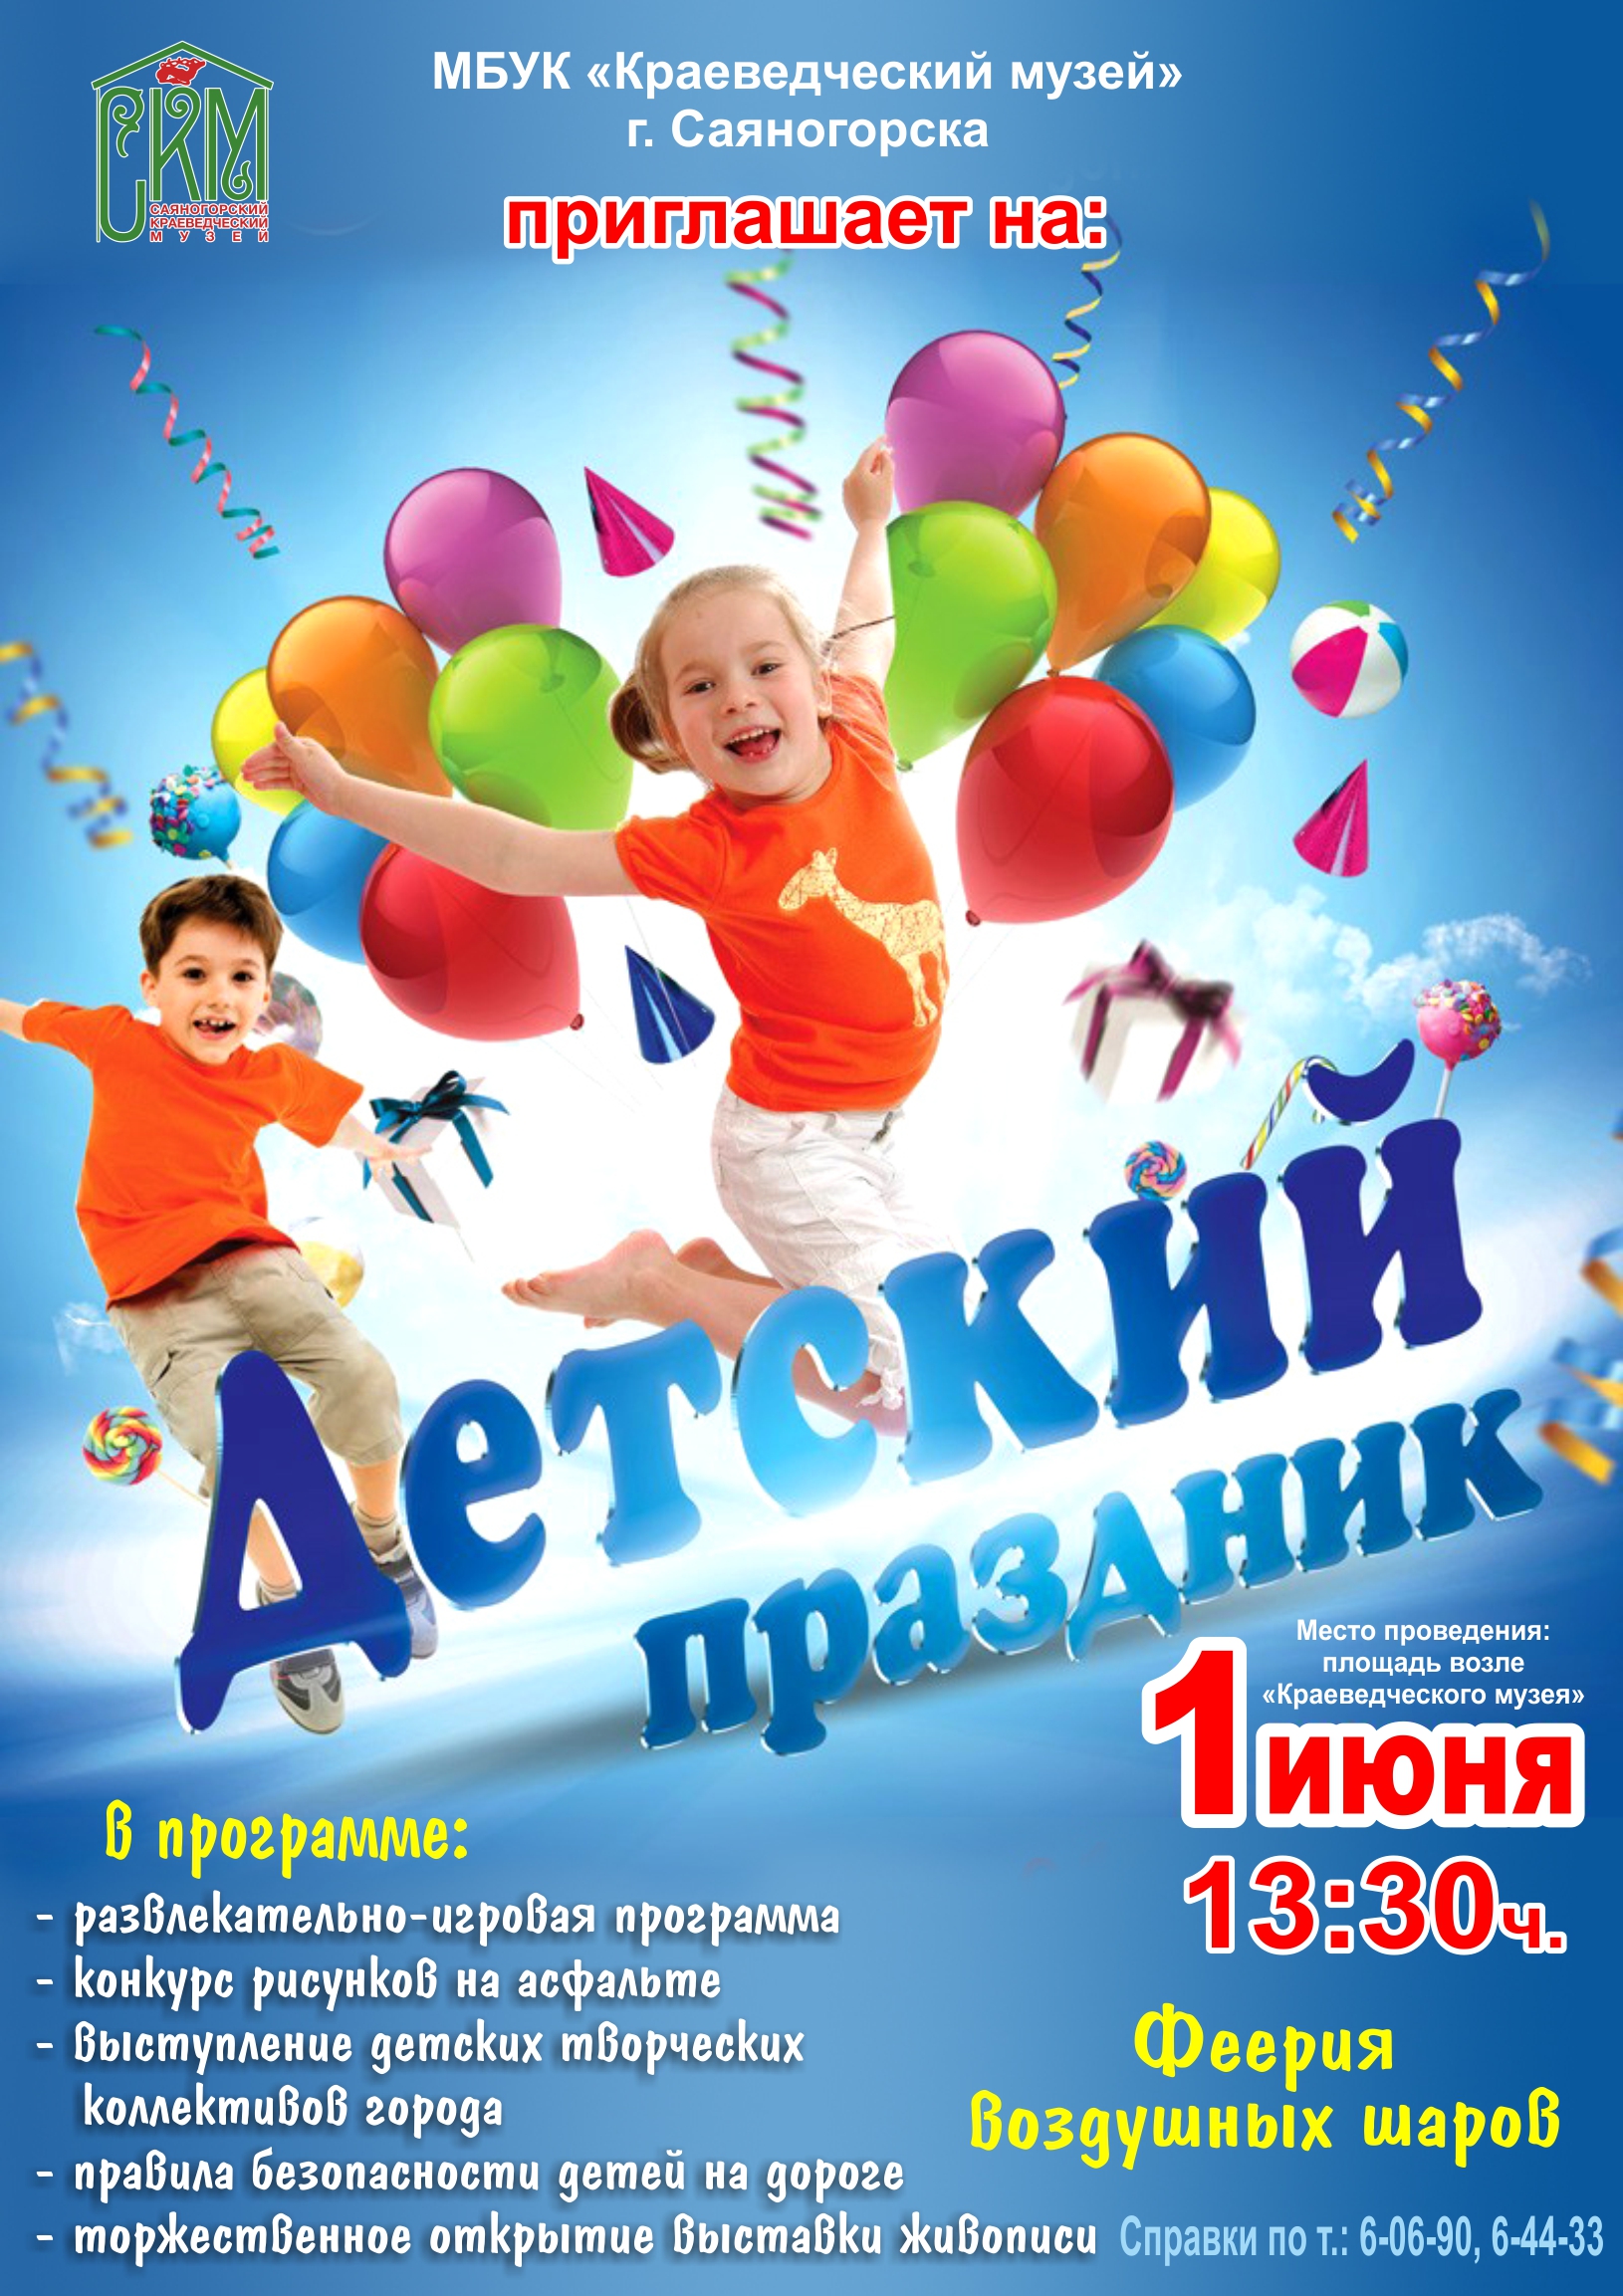 Программы для детей в москве. Афиши детских праздников. День защиты детей афиша. Афиша 1 июня. Игровая развлекательная программа.